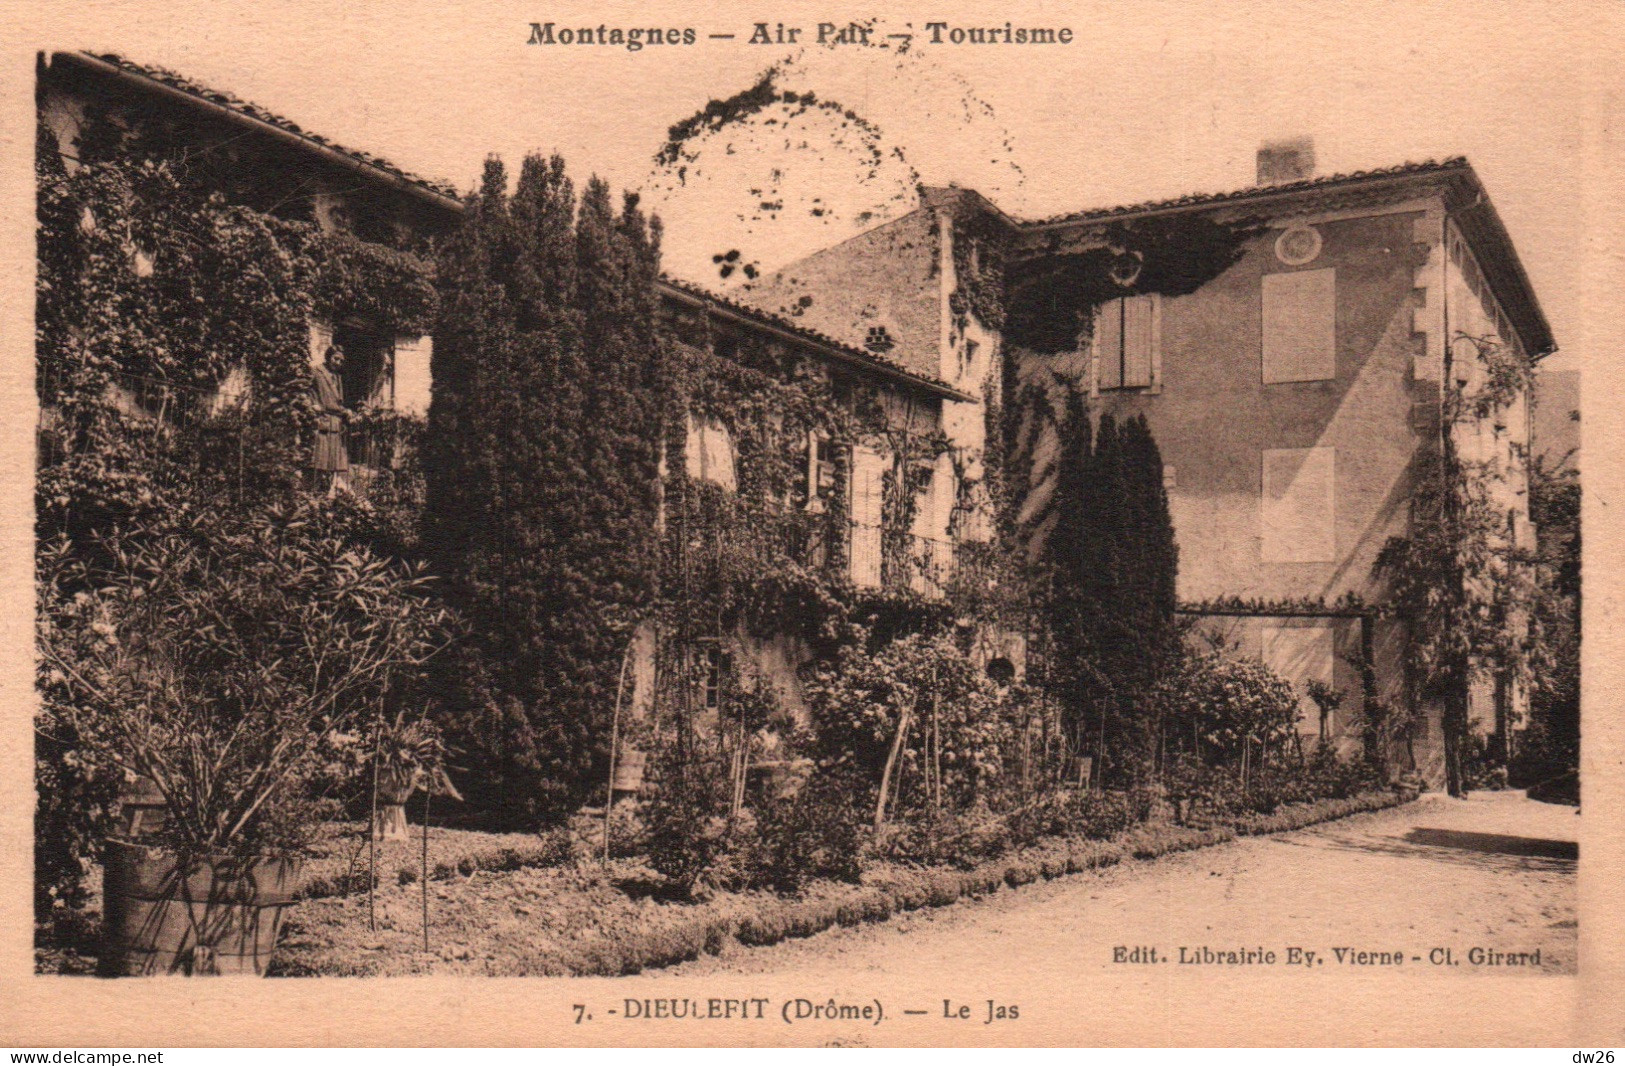 Dieulefit (Drôme: Montagnes, Air Pur, Tourisme) Le Jas, Maison De Repos - Edition Vierne - Carte N° 7 De 1931 - Dieulefit